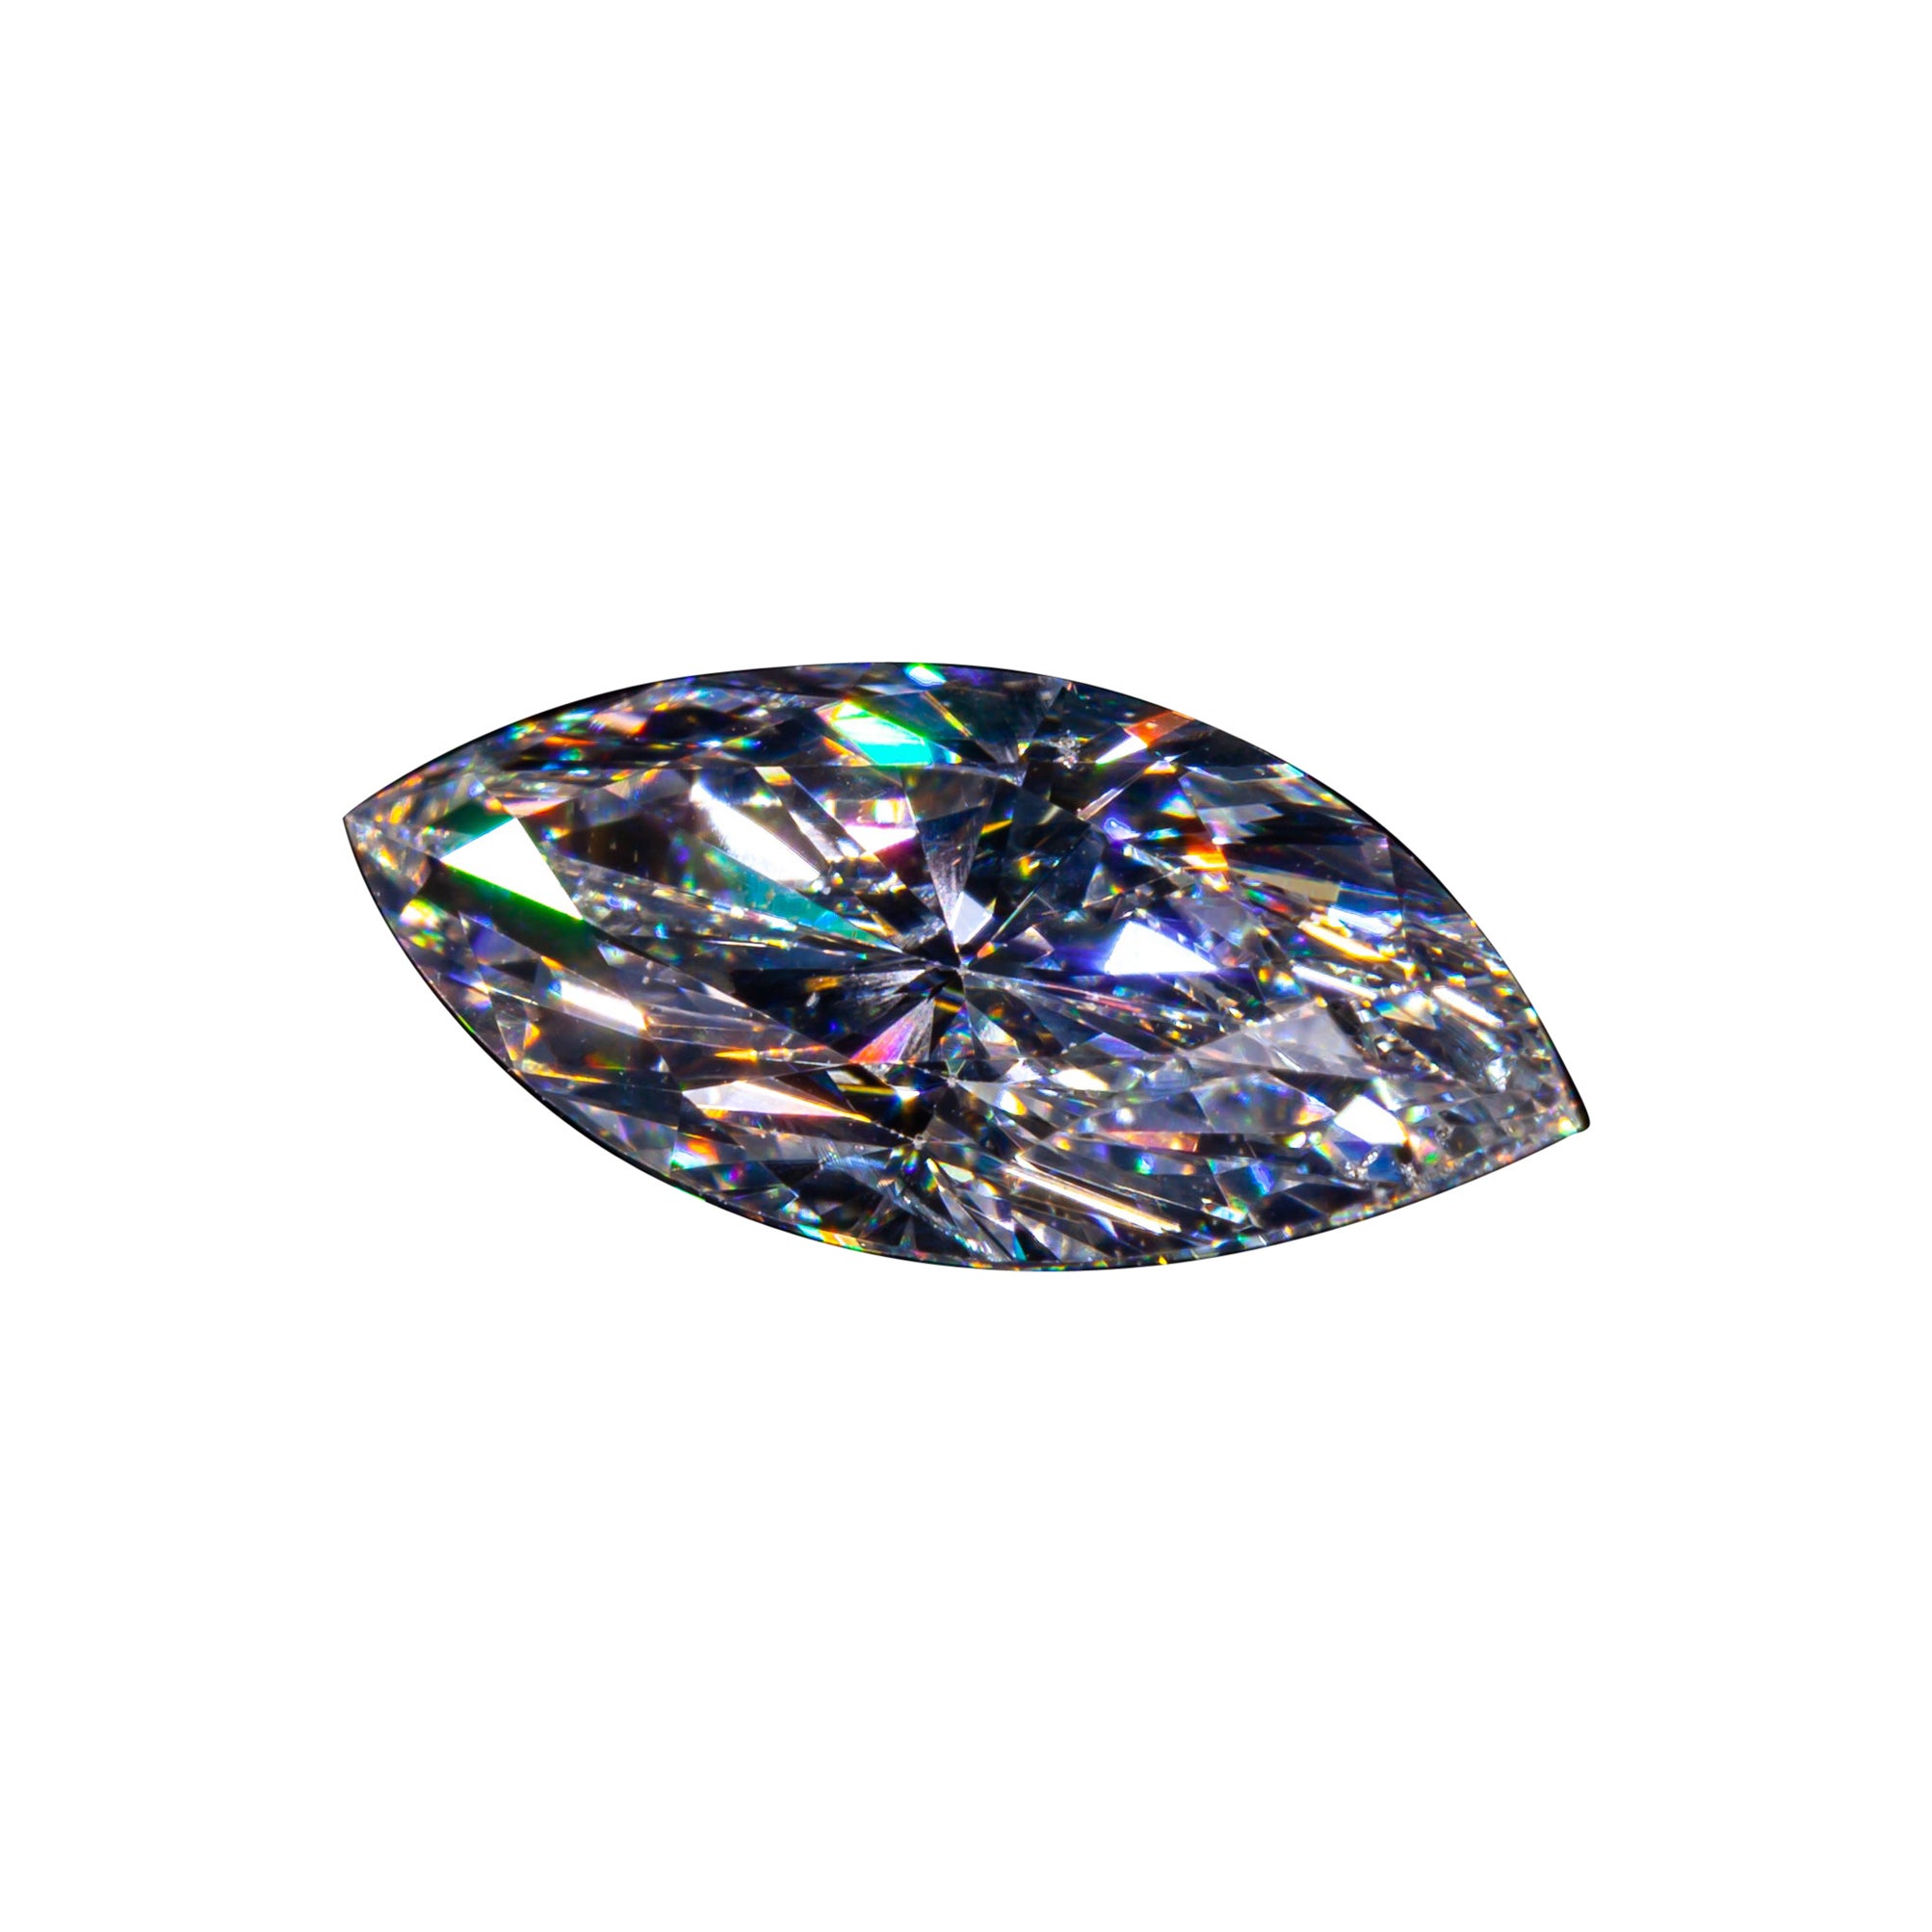 Diamant taille brillant marquise de 1,10 carat non serti D / I1 certifié GIA